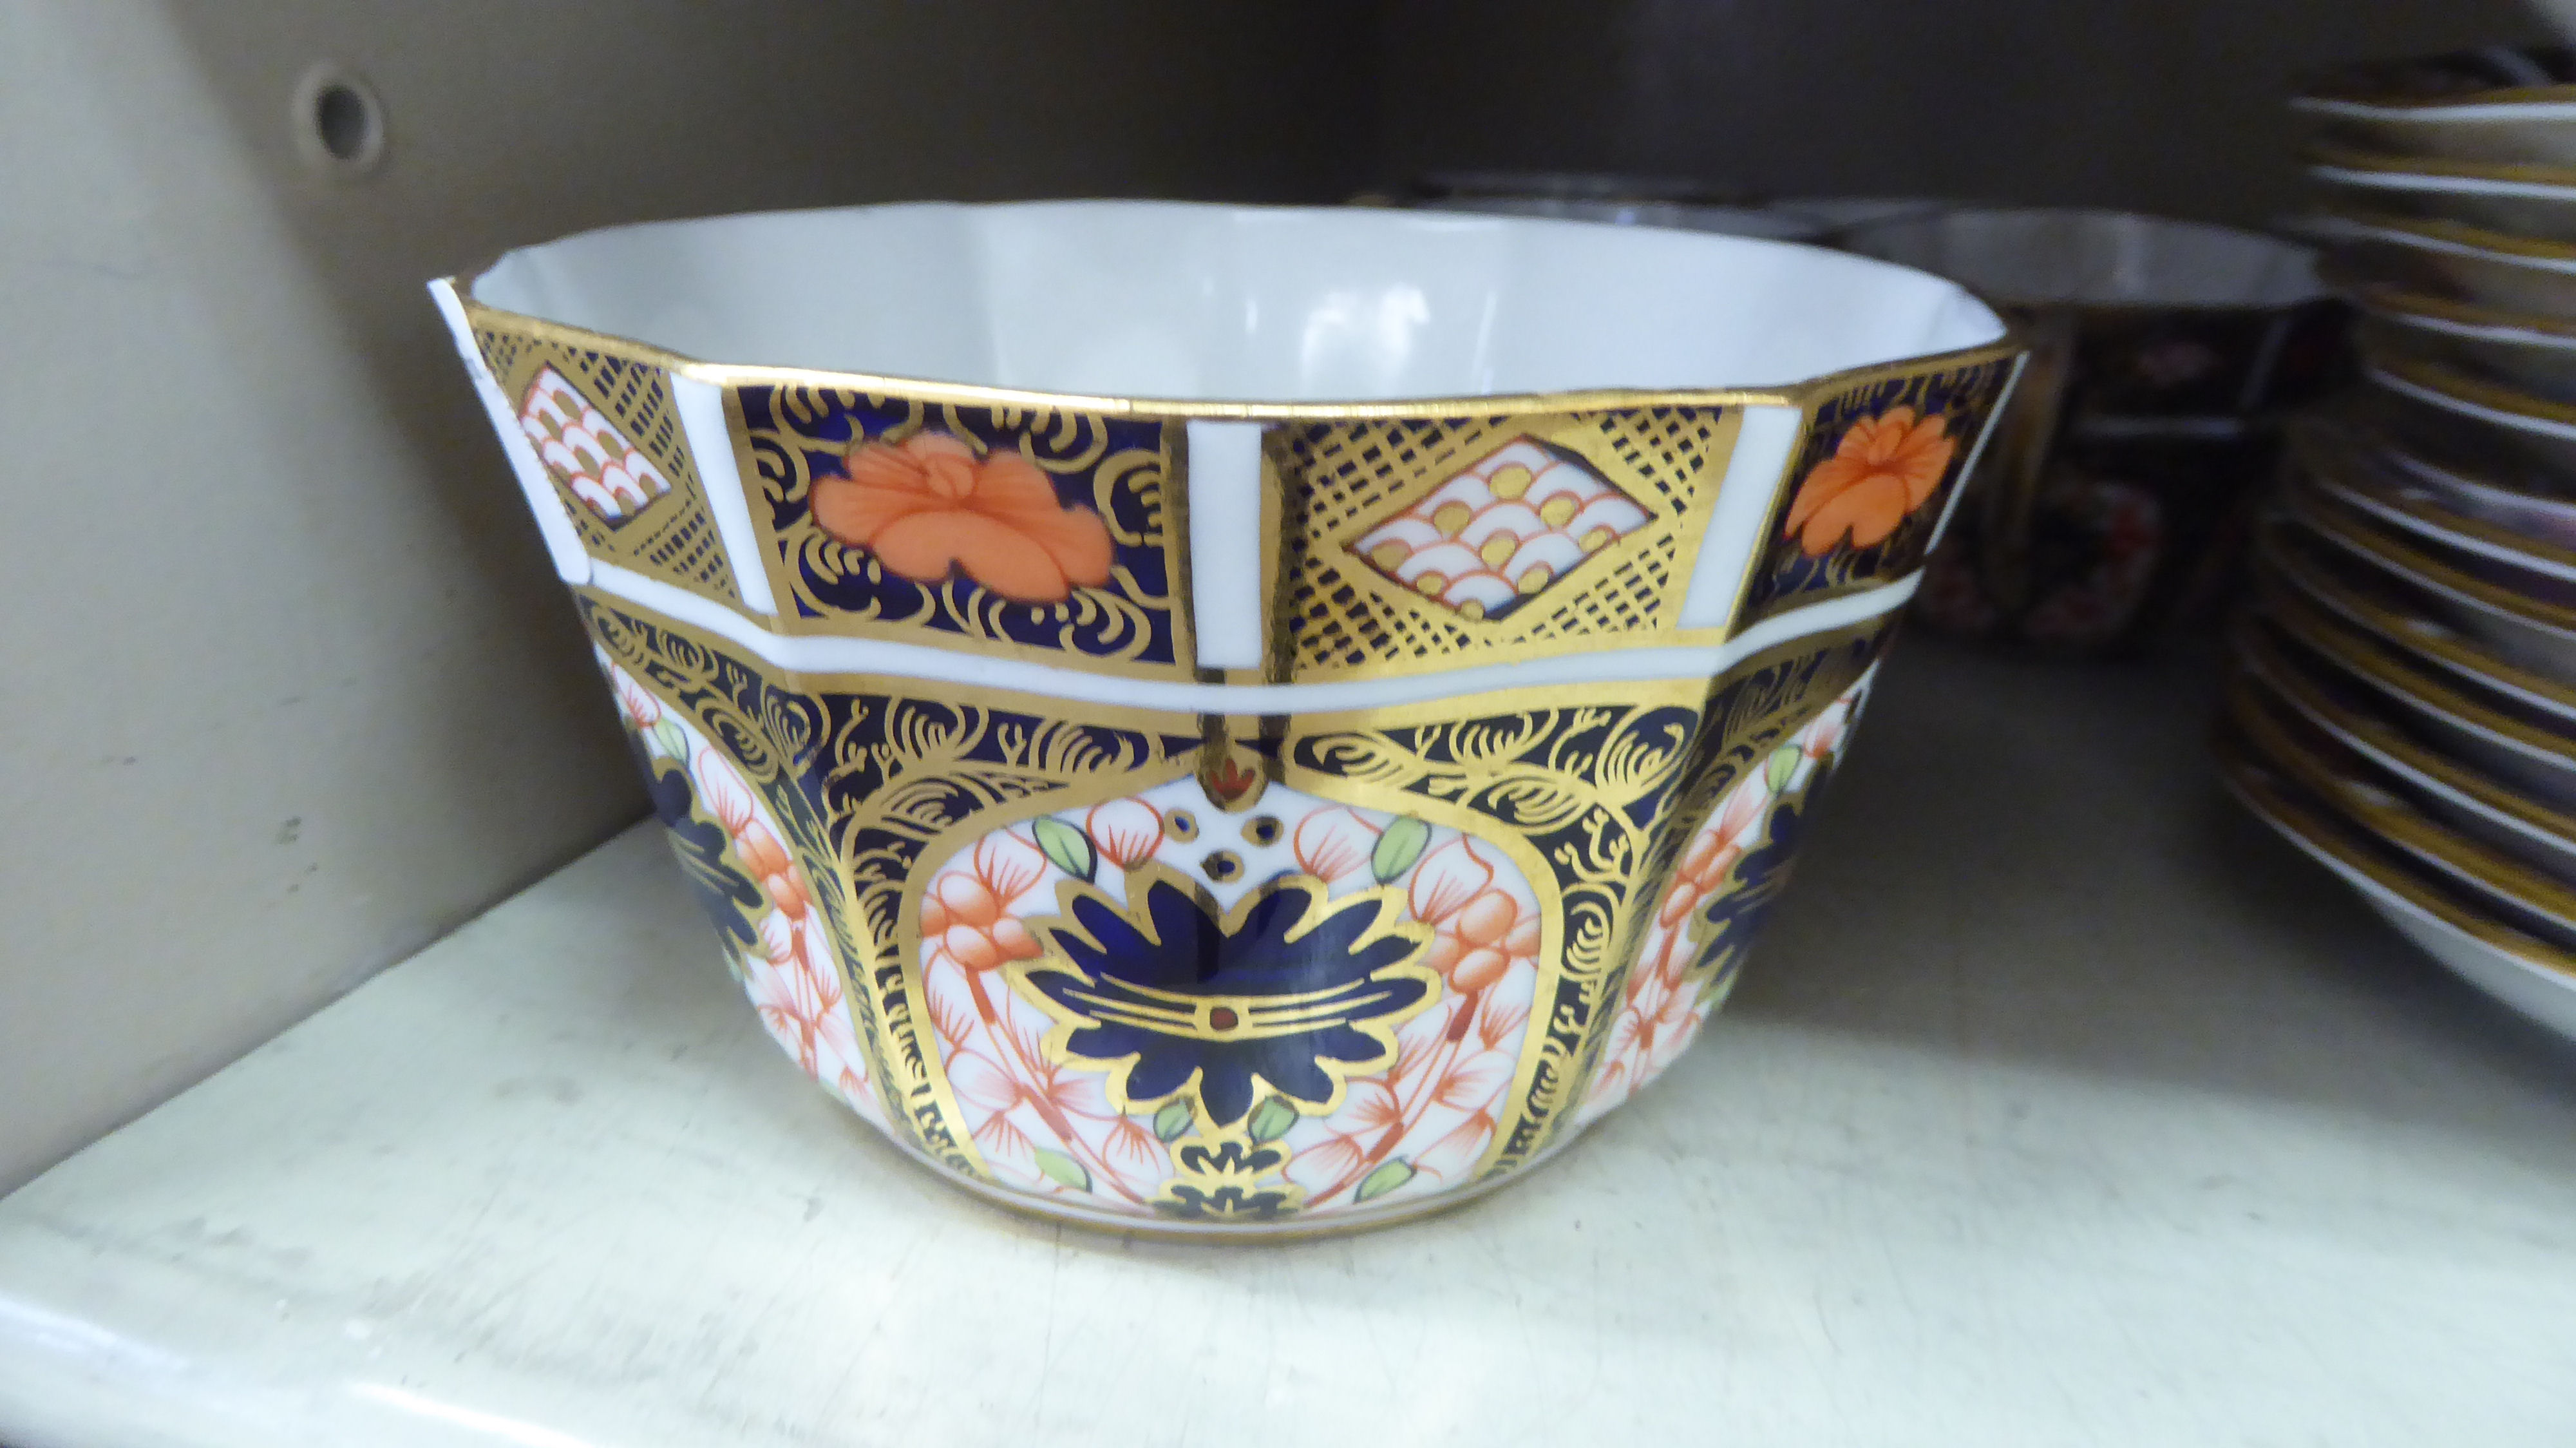 Royal Crown Derby china Imari pattern teaware - Image 2 of 7